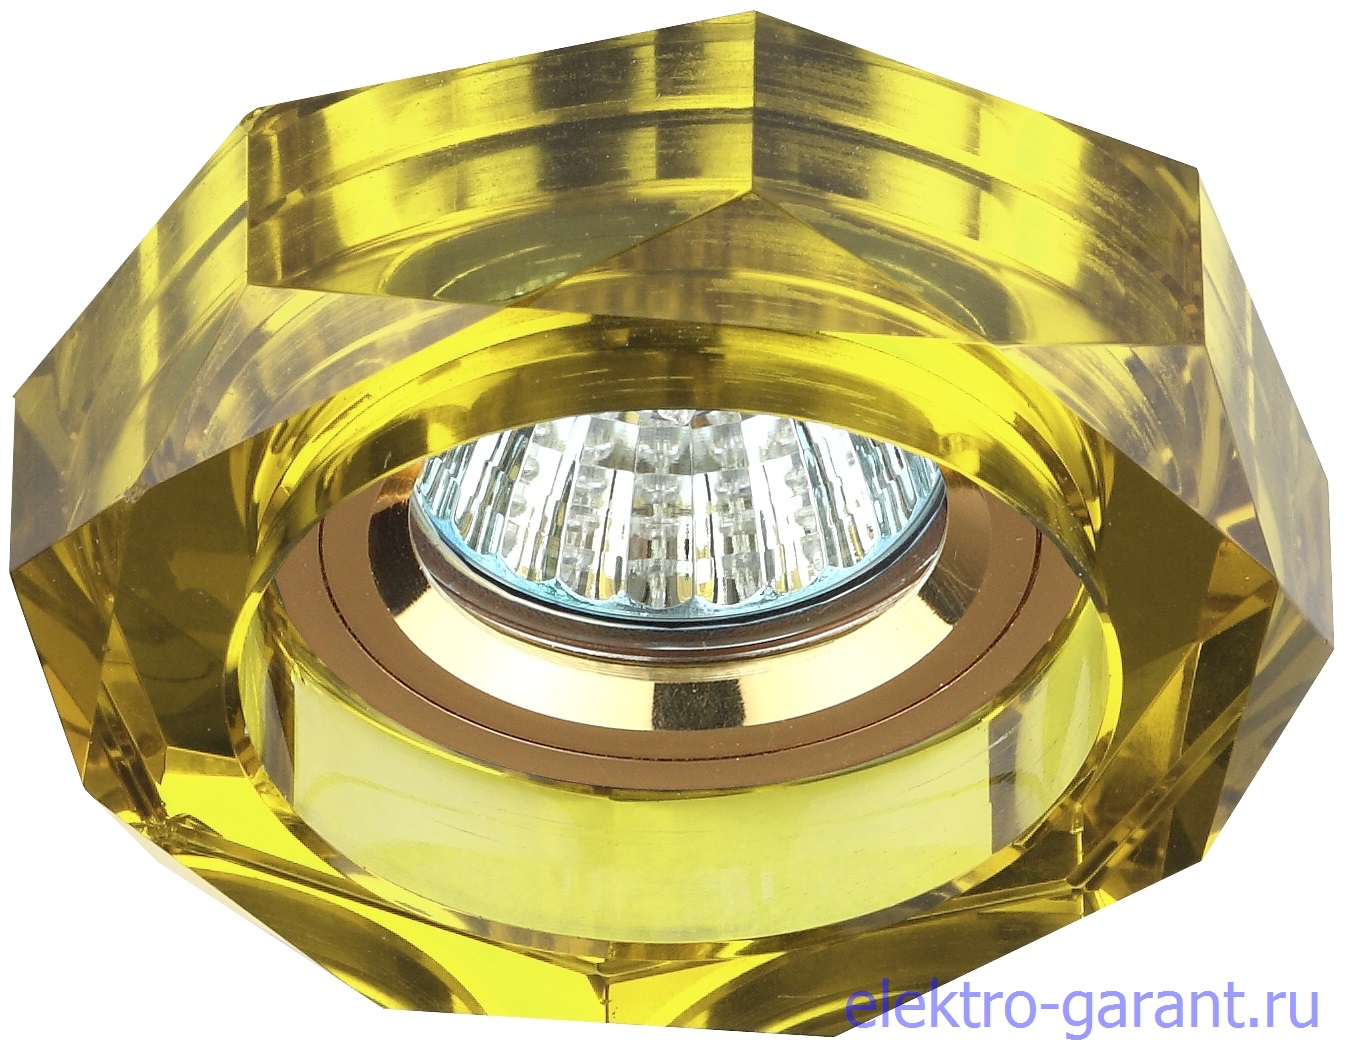 DK6 GD/YL ЭРА декор стекло обьемный многогранник MR16, 50W, хром/жёлтый